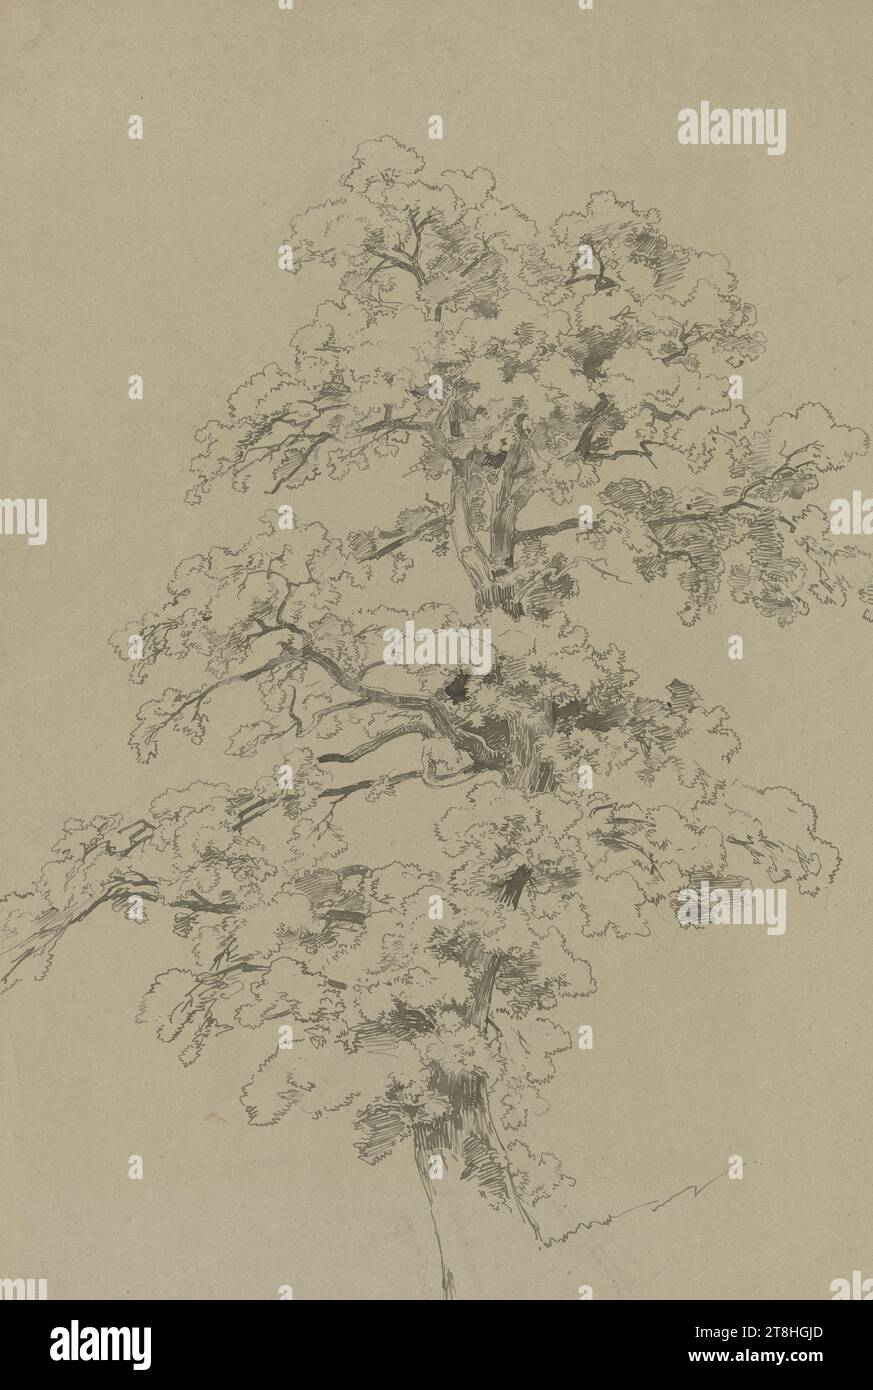 CARL THEODOR REIFFENSTEIN, Un arbre, juillet 1842, feuille, 671 x 468 mm, stylo gris-brun sur crayon sur papier vélin brunâtre, Un arbre, CARL THEODOR REIFFENSTEIN, 19E SIÈCLE, DESSIN, stylo gris-brun sur crayon sur papier vélin brunâtre, ENCRE?, ENCRE?, MÉLANGE GRAPHITE-ARGILE, PAPIER VELIN, DESSIN À LA PLUME, DESSIN AU CRAYON, ALLEMAND, ÉTUDE DES ARBRES, ÉTUDE DES VOYAGES, ETUDE, datée en bas à droite, avec le stylo en brun foncé, juillet 1842. Banque D'Images